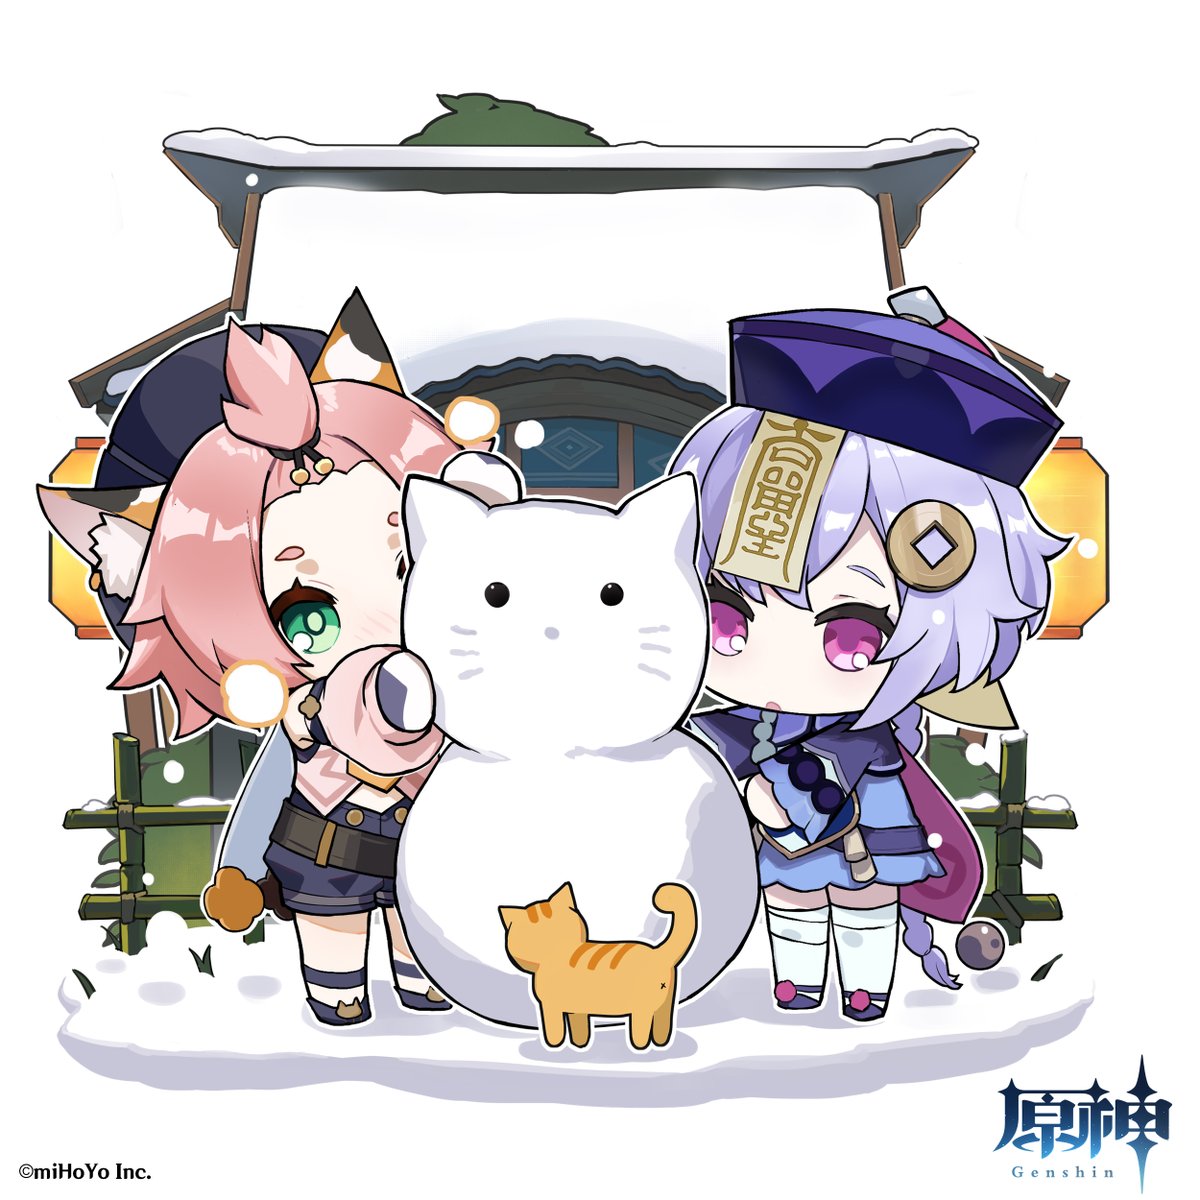 原神 Genshin 公式 海灯祭ミニイラスト 雪だるま 冷たい 子猫 可愛い お祭り 楽しい 原神 Genshin T Co 4euywif3kd Twitter